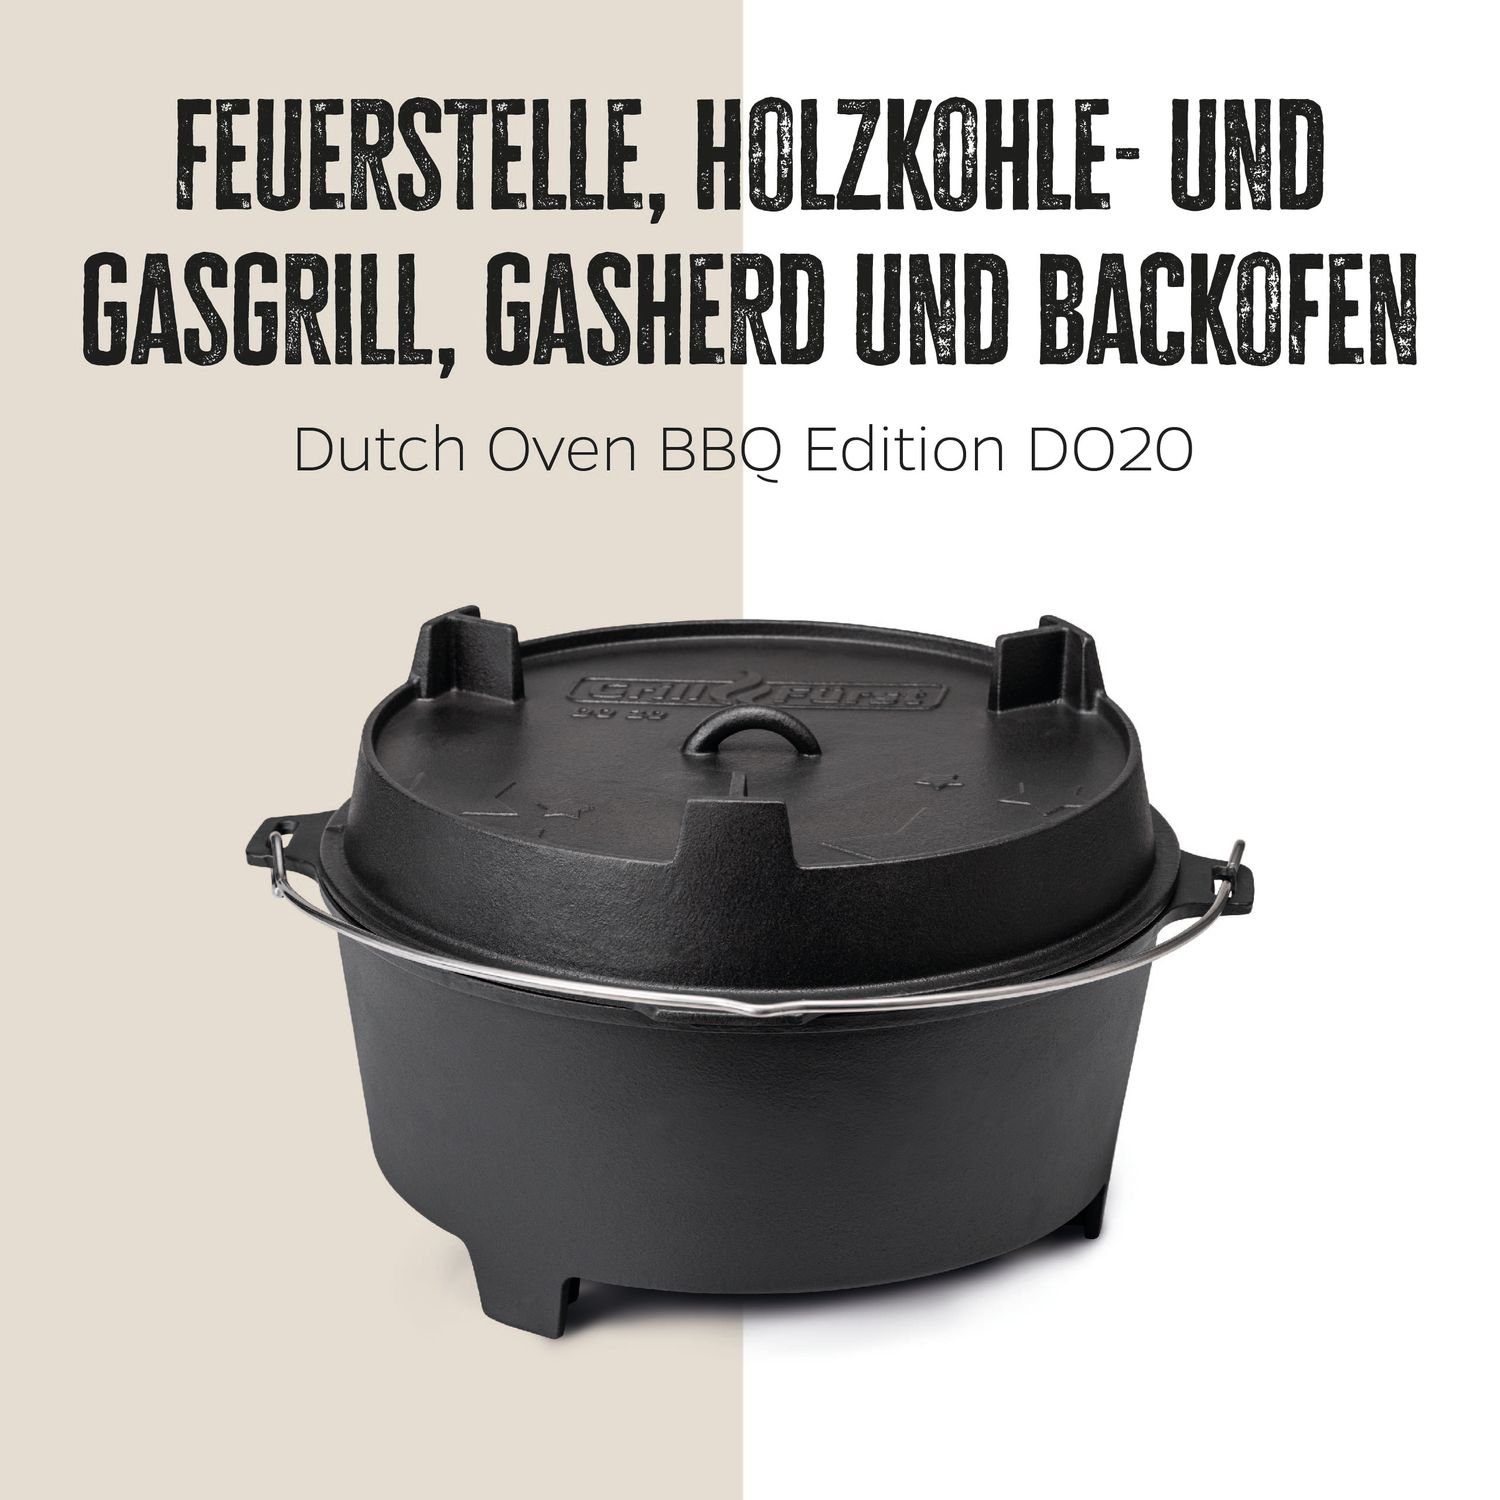 Grillfürst Bratentopf Grillfürst Dutch Oven BBQ DO20 Edition